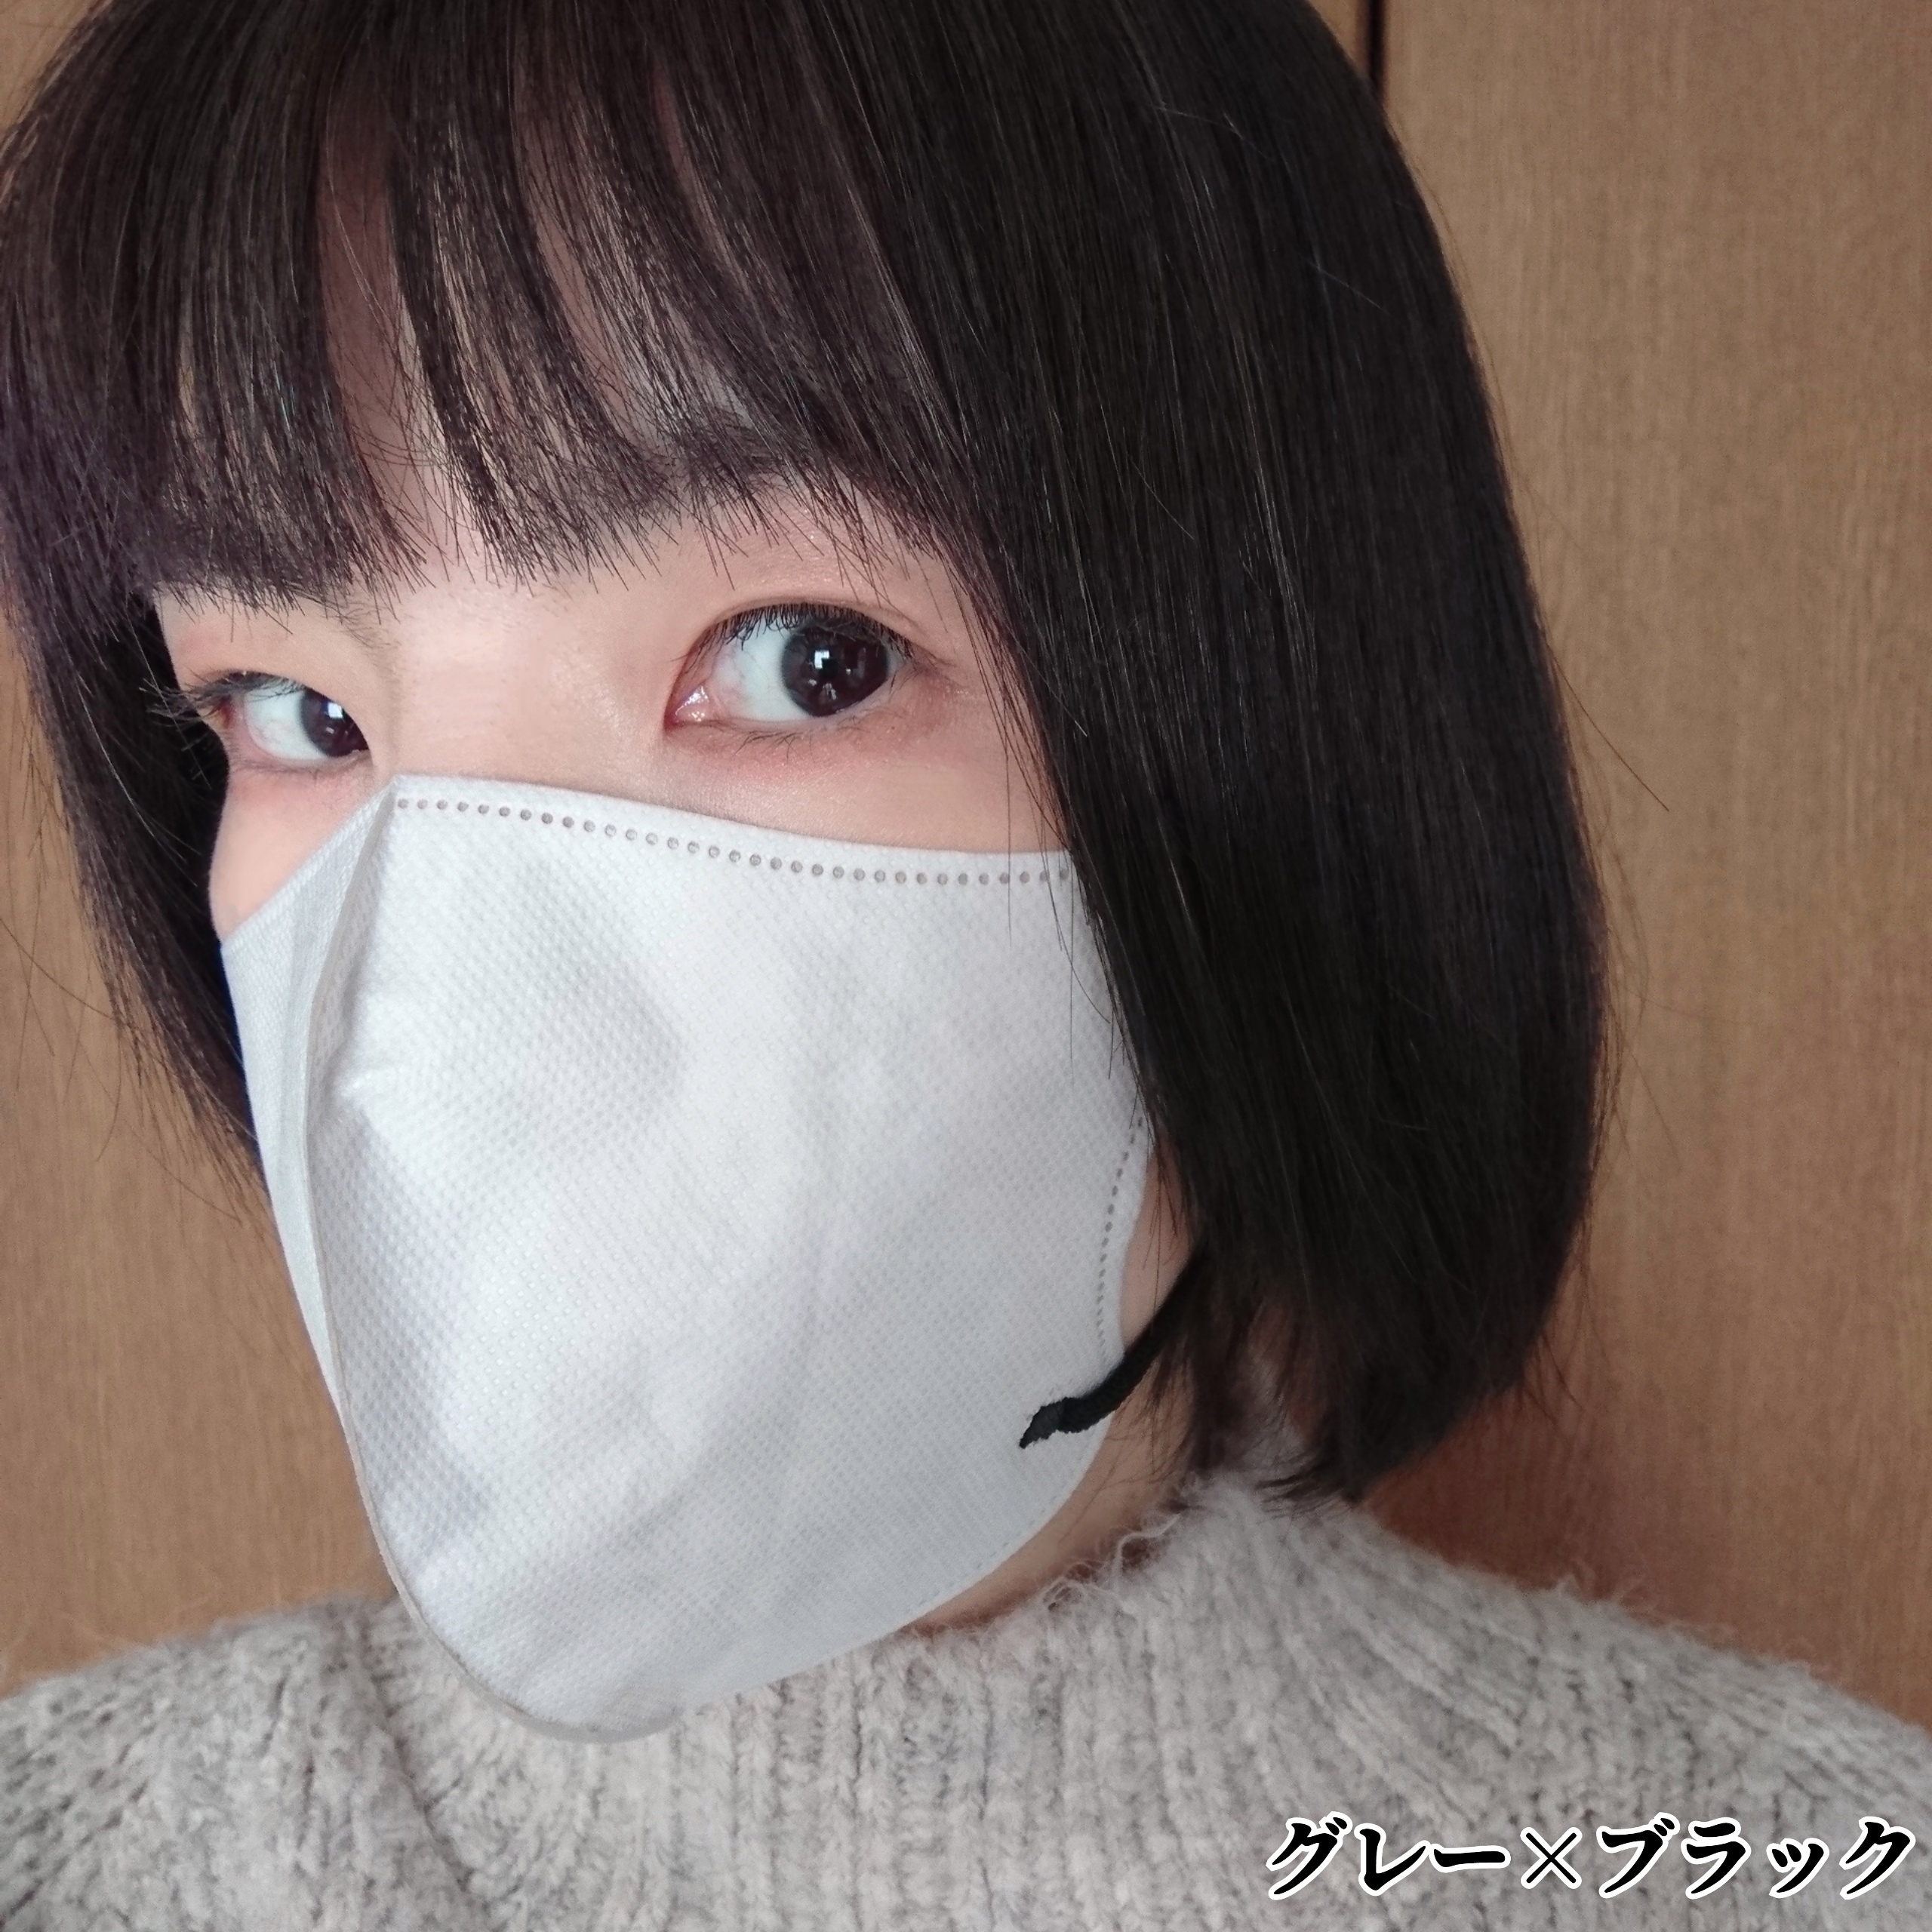 やまと工業 スタイリーマスクを使ったYuKaRi♡さんのクチコミ画像5